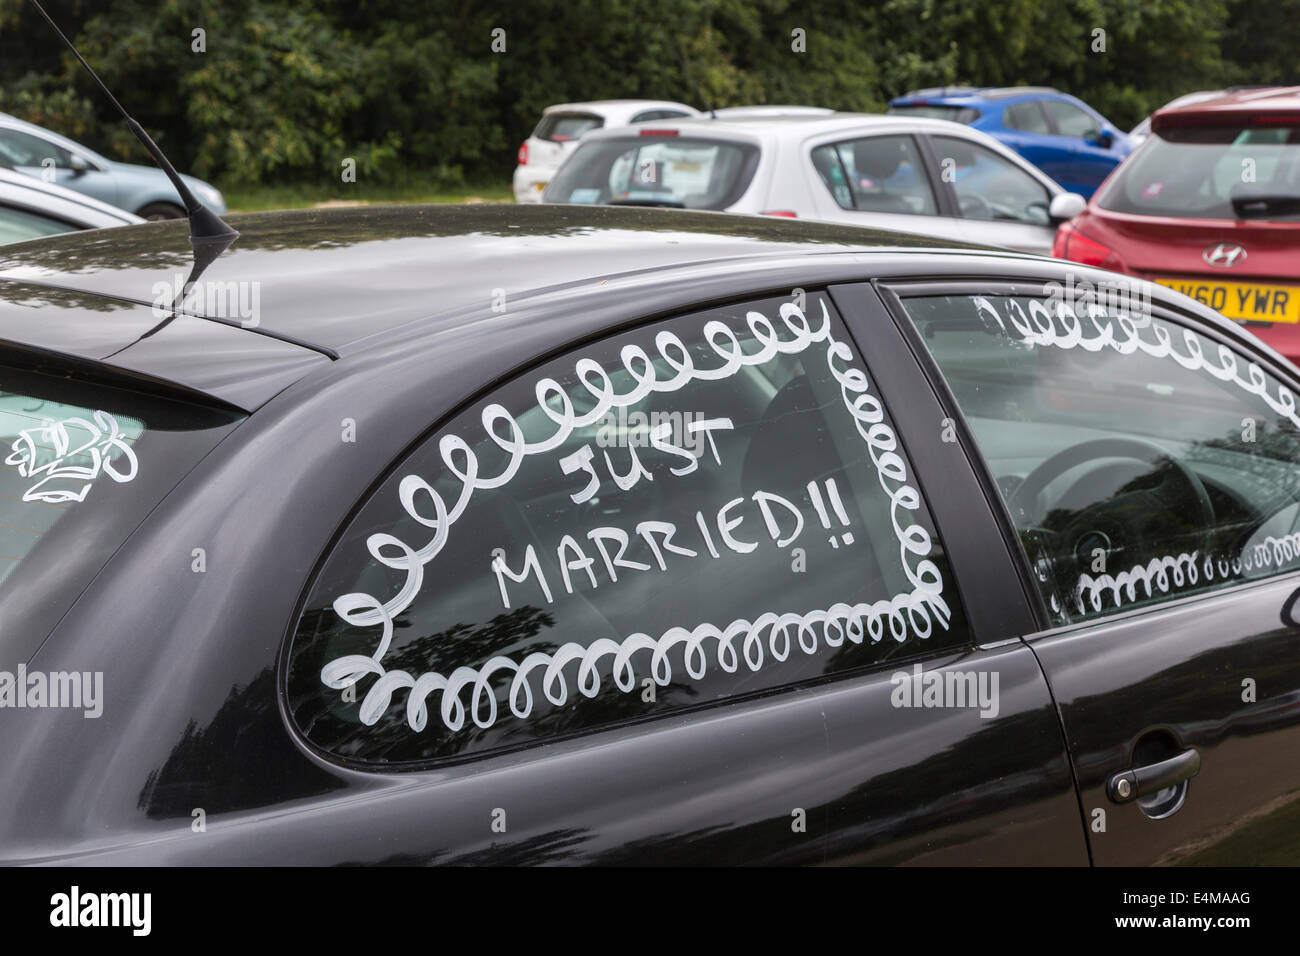 Fenster Hochzeitsreisende schwarze Autos lackiert mit "Just Married!" Stockfoto